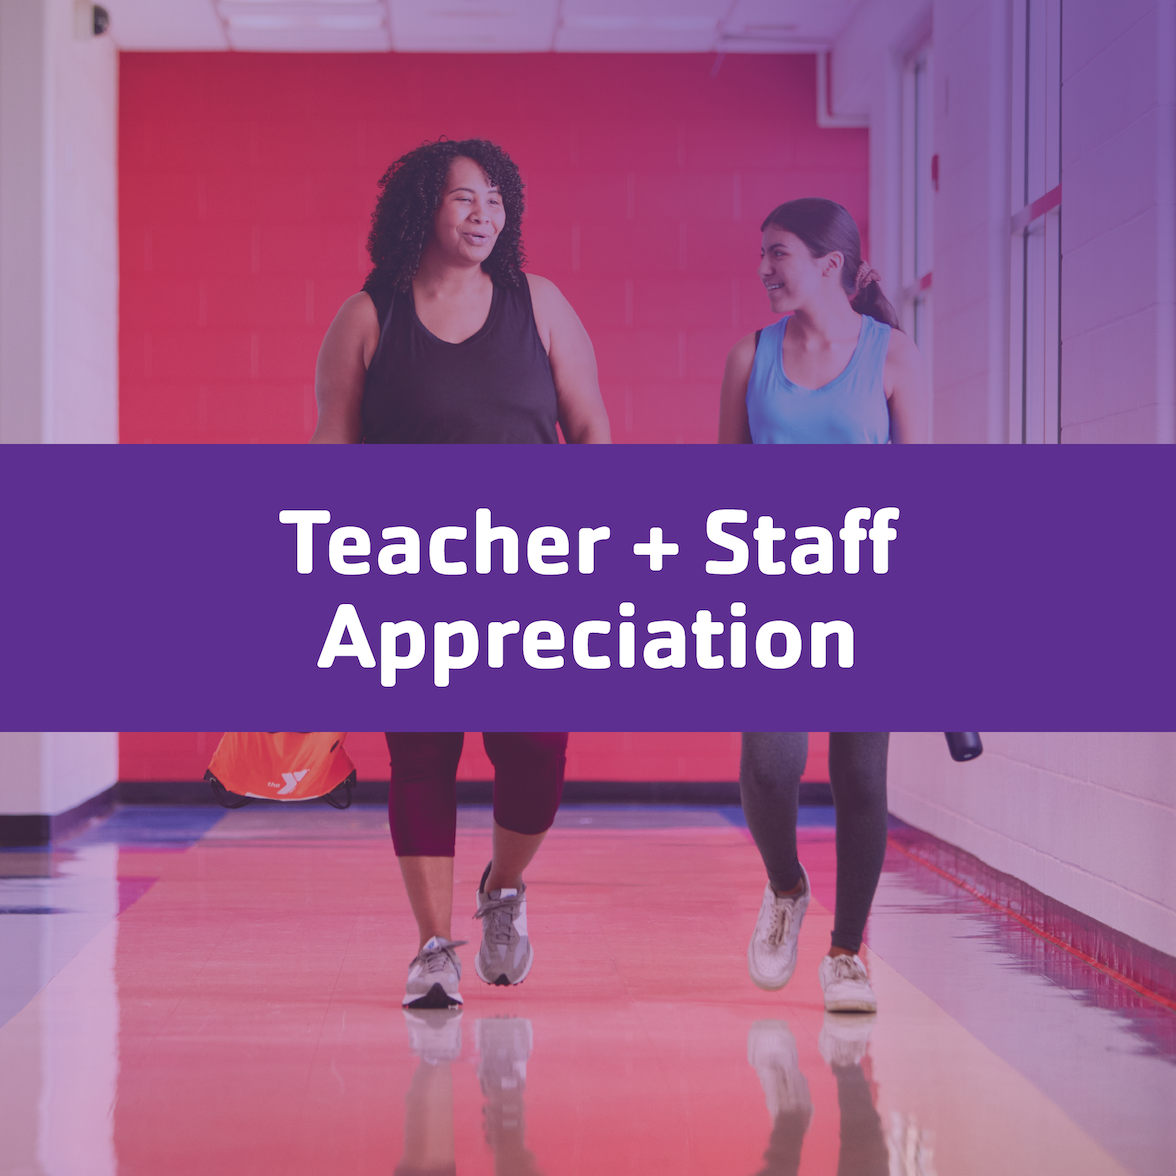 Teacher appreciation promotion